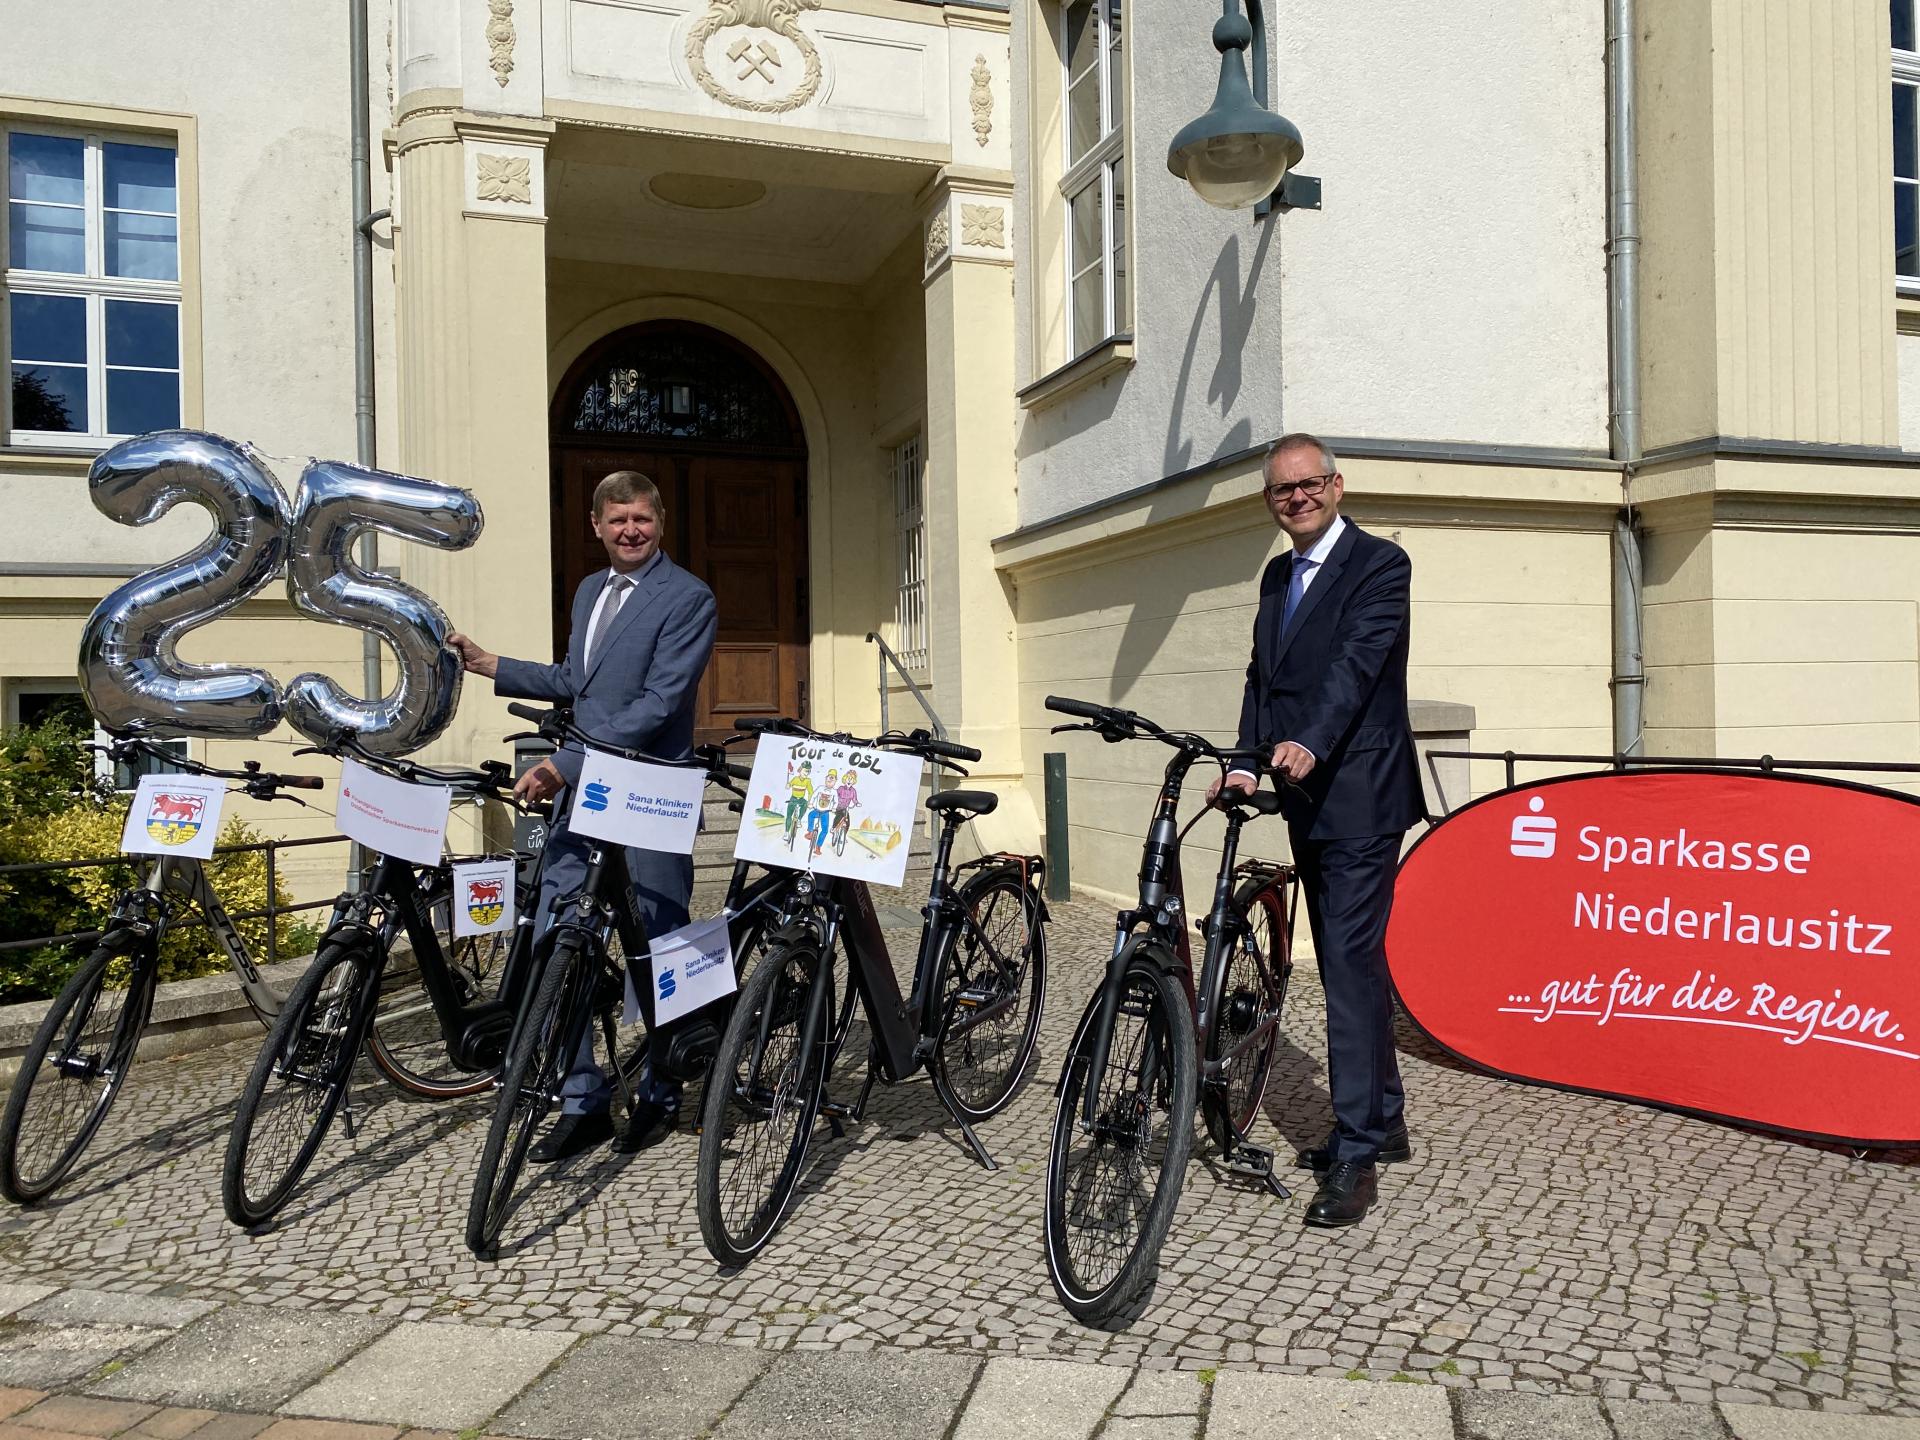 Übergabe der zwei E-Bikes von der Sparkasse durch Marcus Starick an Landrat Heinze und Präsentation der fünf Hauptgewinne der 25. Tour de OSL (Foto: Landkreis OSL / Nora Bielitz)